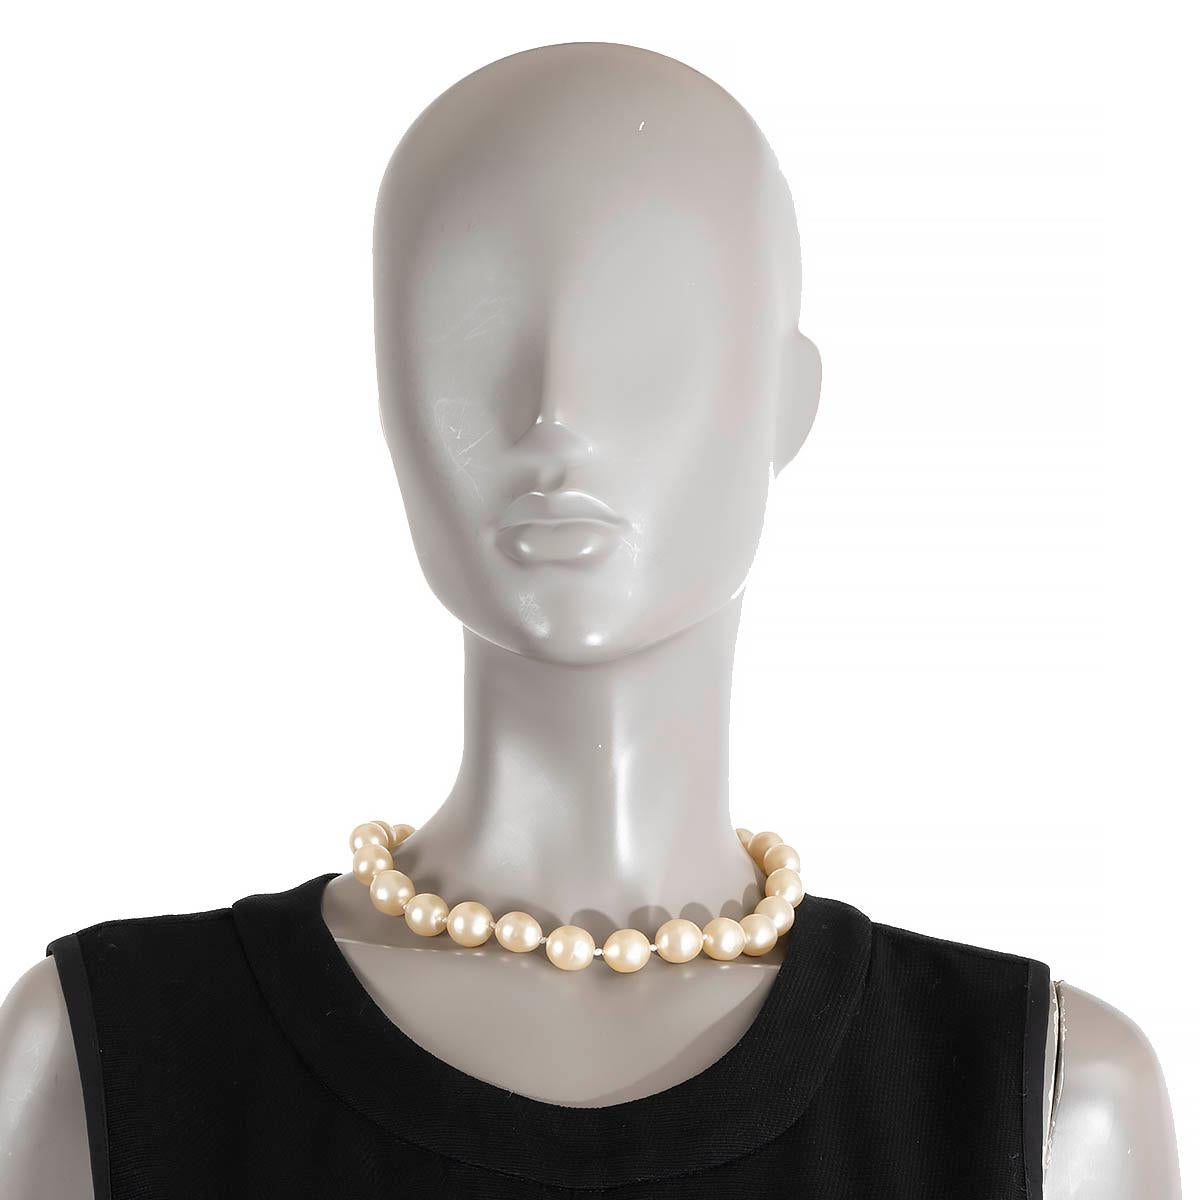 100% authentische Chanel Vintage faux Perlen Halskette mit goldfarbenen Hakenverschluss.  Wurde getragen und ist in ausgezeichnetem Zustand.

Breite	1.3cm (0.5in)
Länge	44cm (17.2in)
Hardware	Gold-Ton

Alle unsere Angebote umfassen nur den